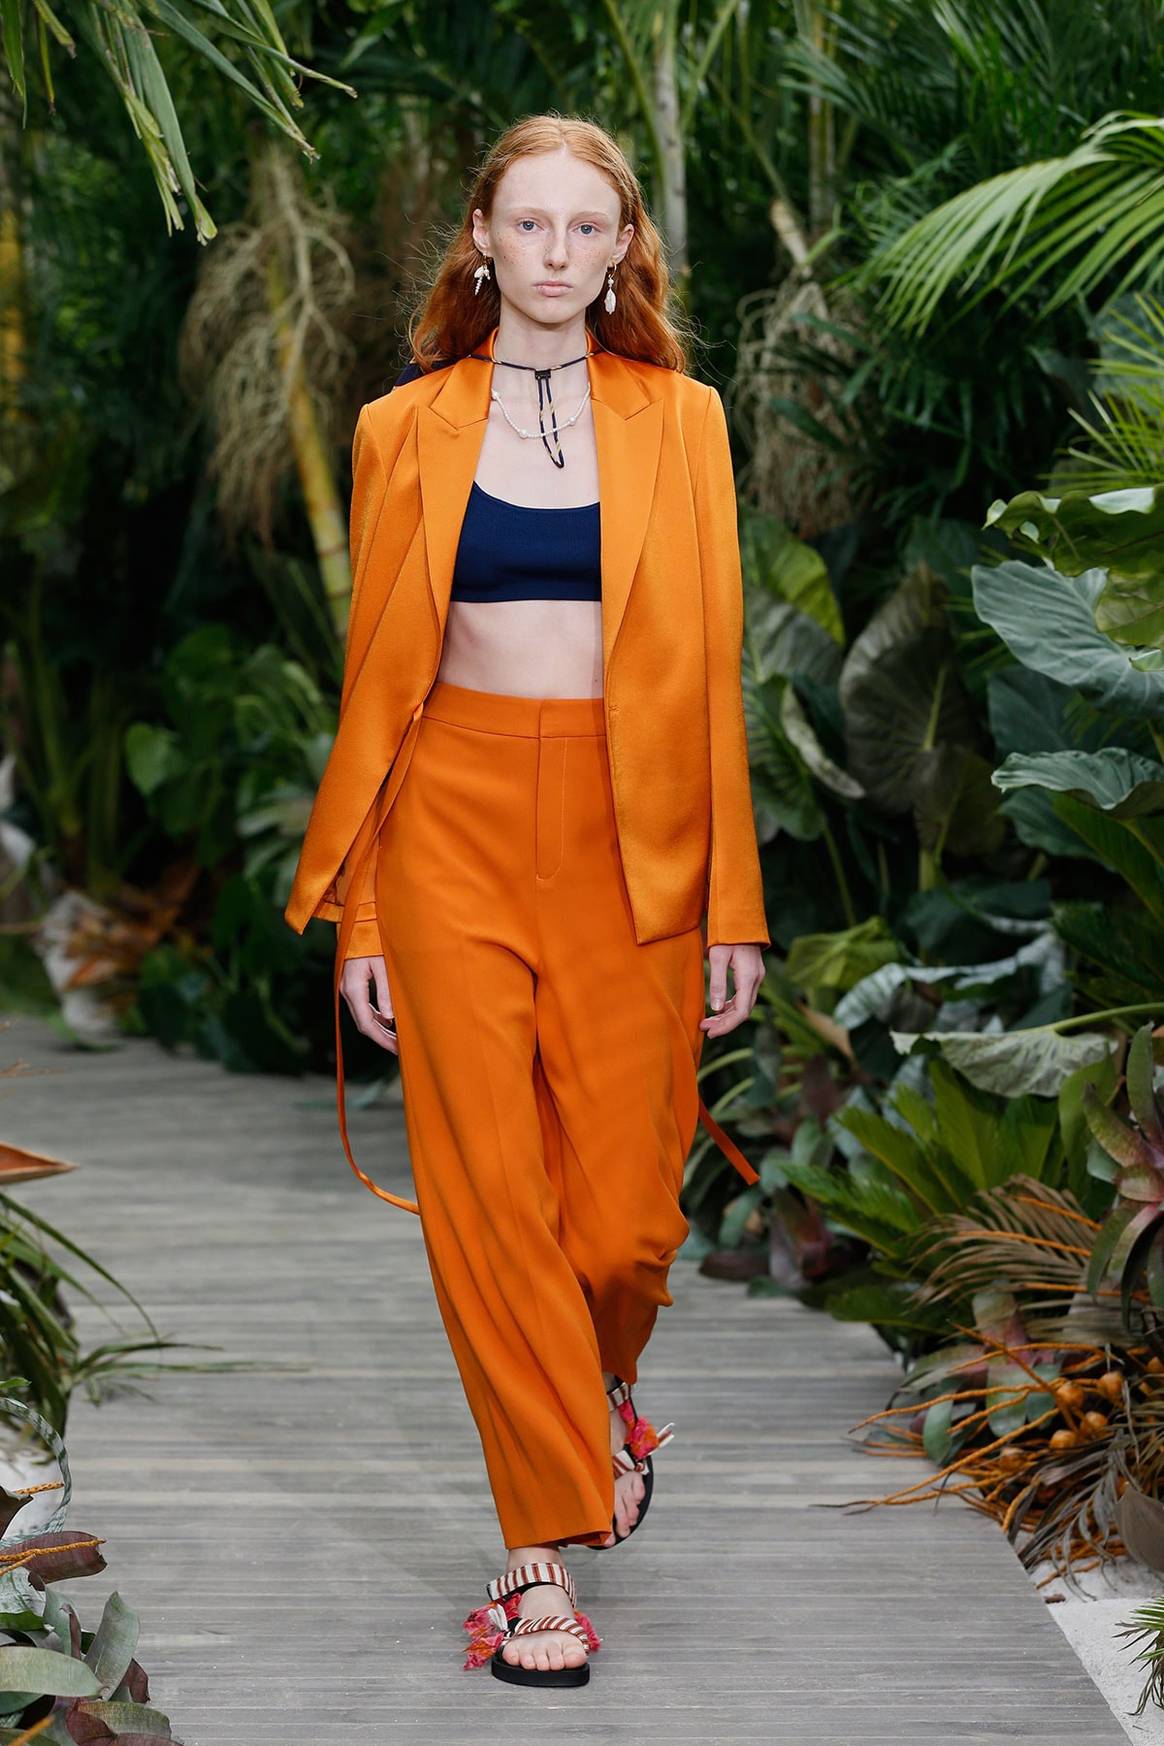 Entdeckt auf dem Laufsteg: Pantones Modefarben Frühling/Sommer 2021